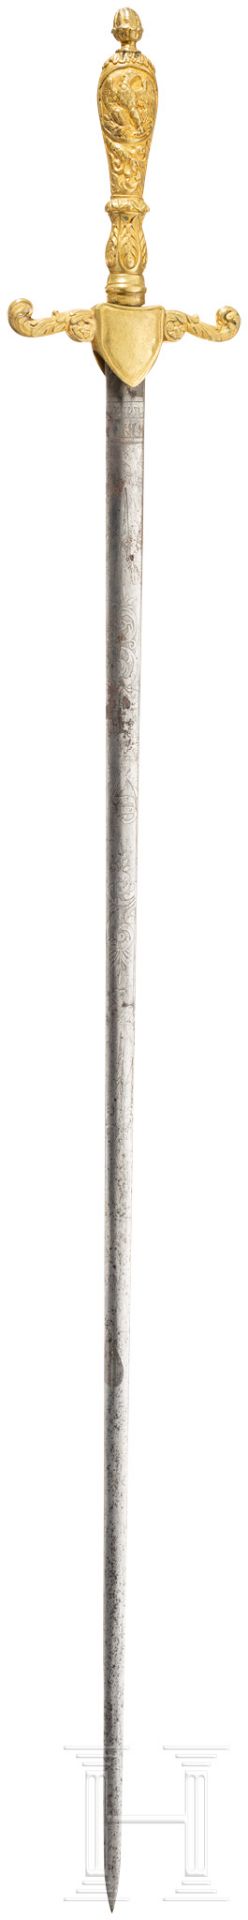 Degen für Angehörige des Medical Staff, Trageweise 1830 bis 1850Klinge mit bikonvexem Querschnitt, - Bild 2 aus 2